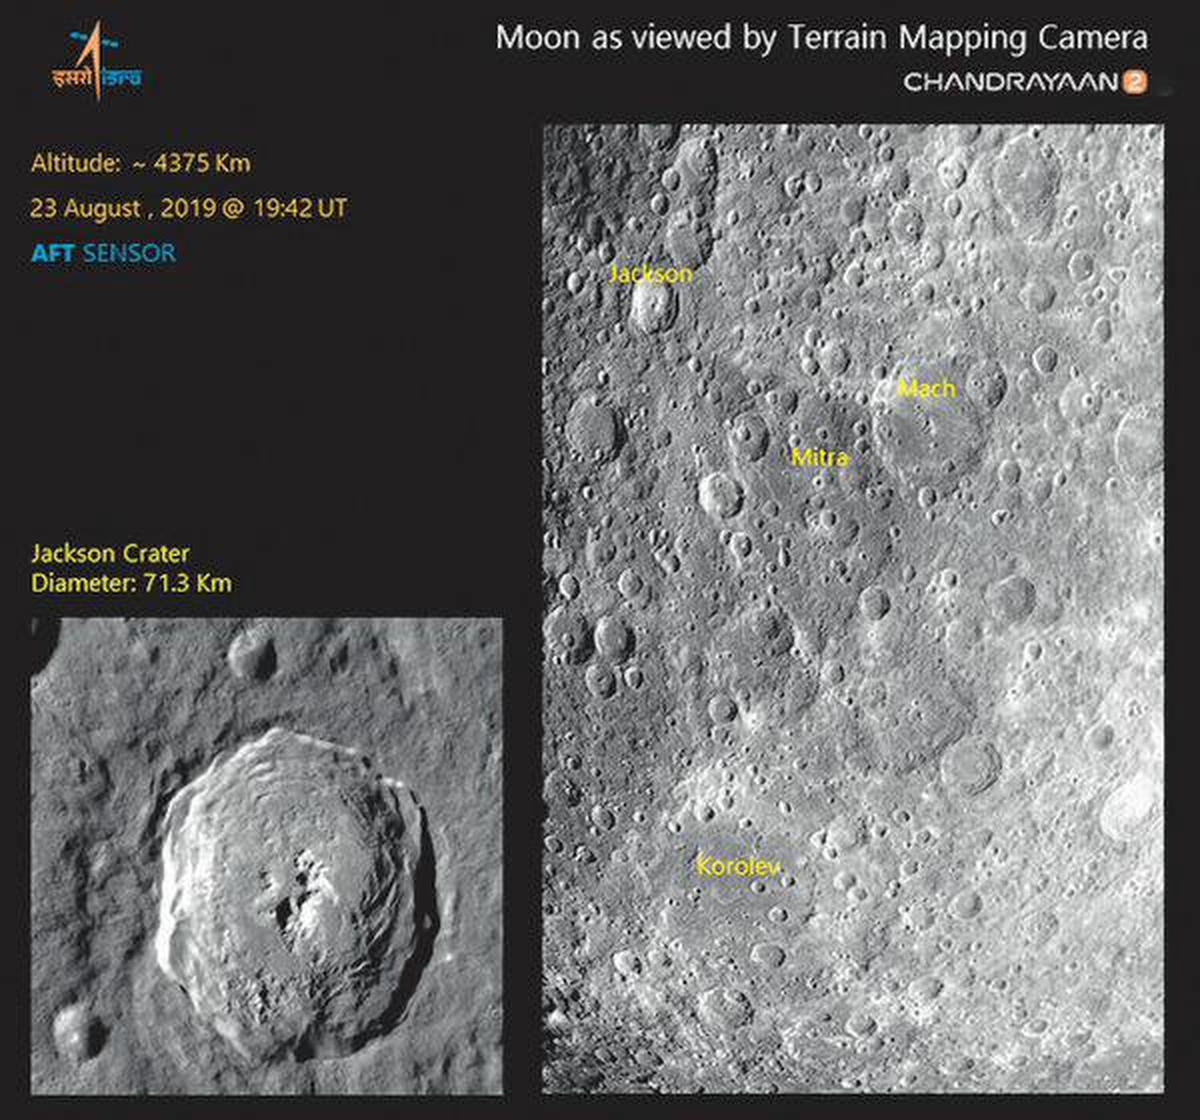 фото места посадки на луне